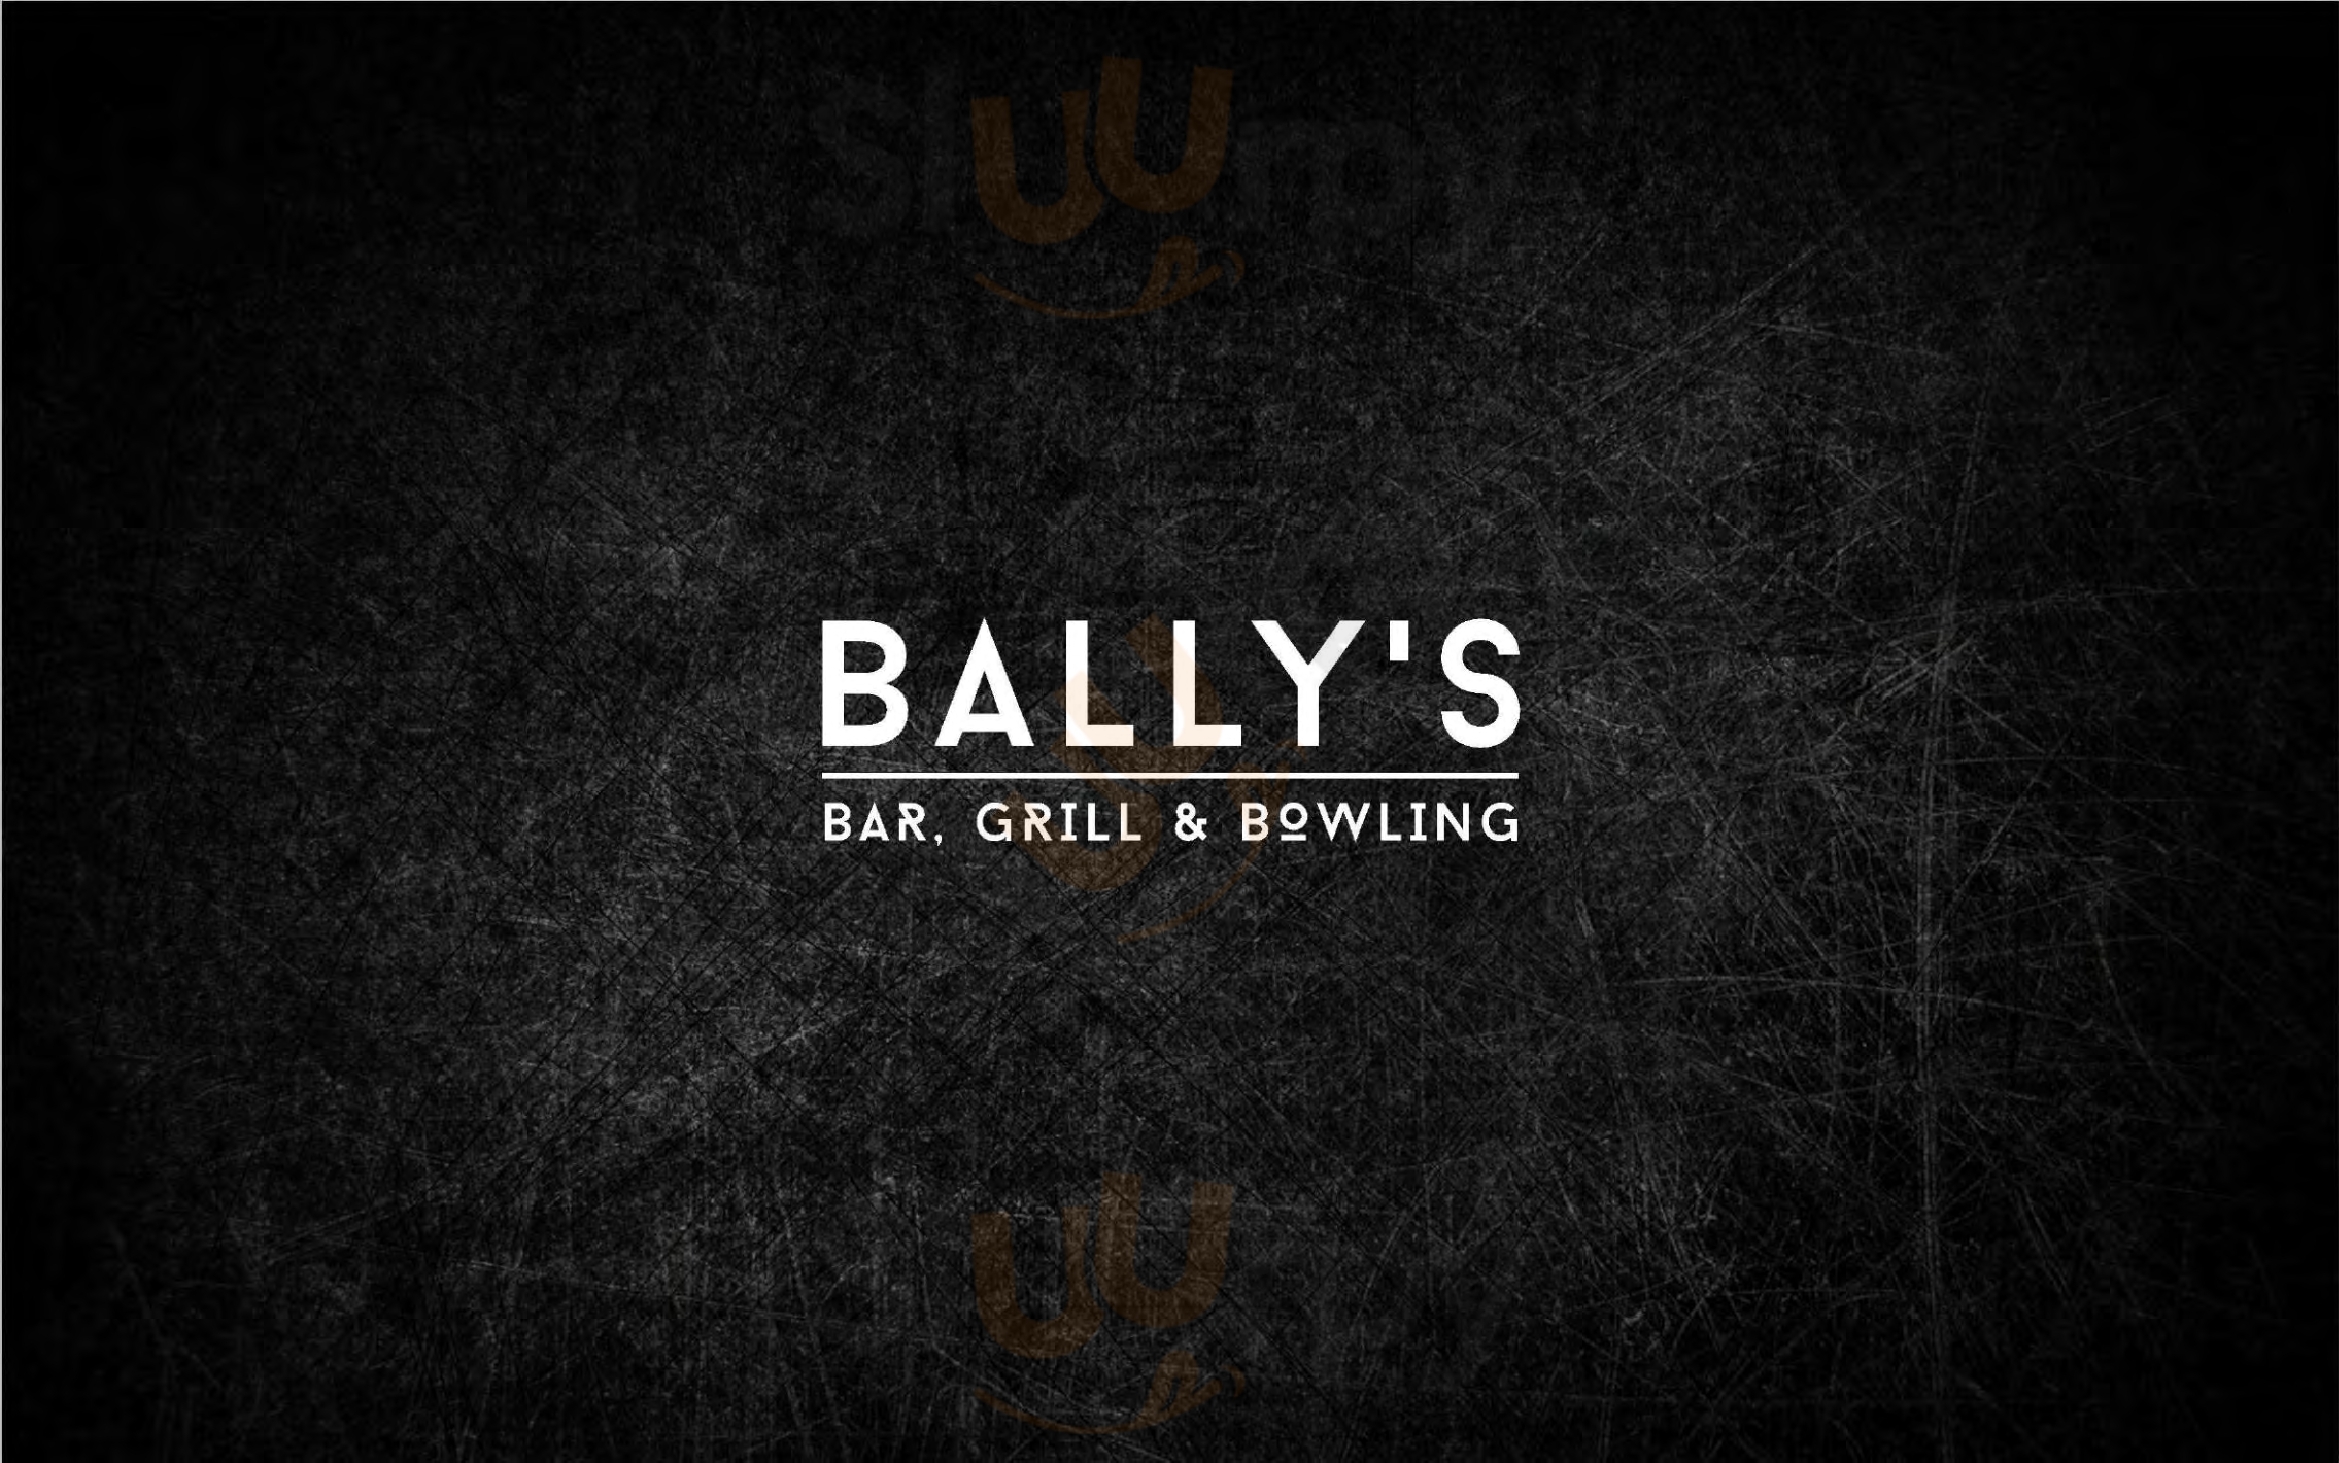 Bally's Bar, Grill & Bowling Rijswijk Menu - 1